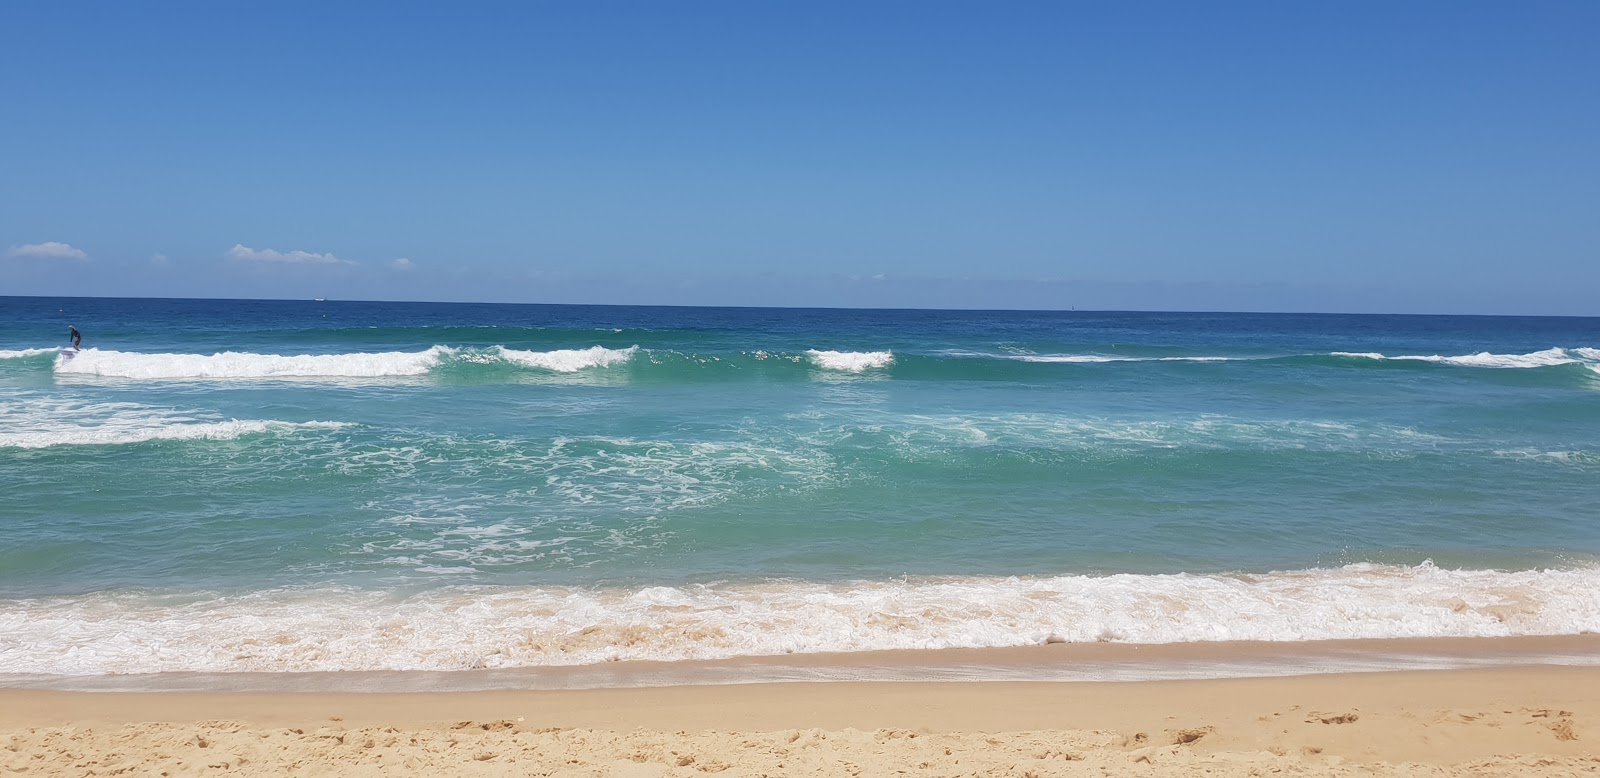 Fotografie cu Kawana Beach - locul popular printre cunoscătorii de relaxare